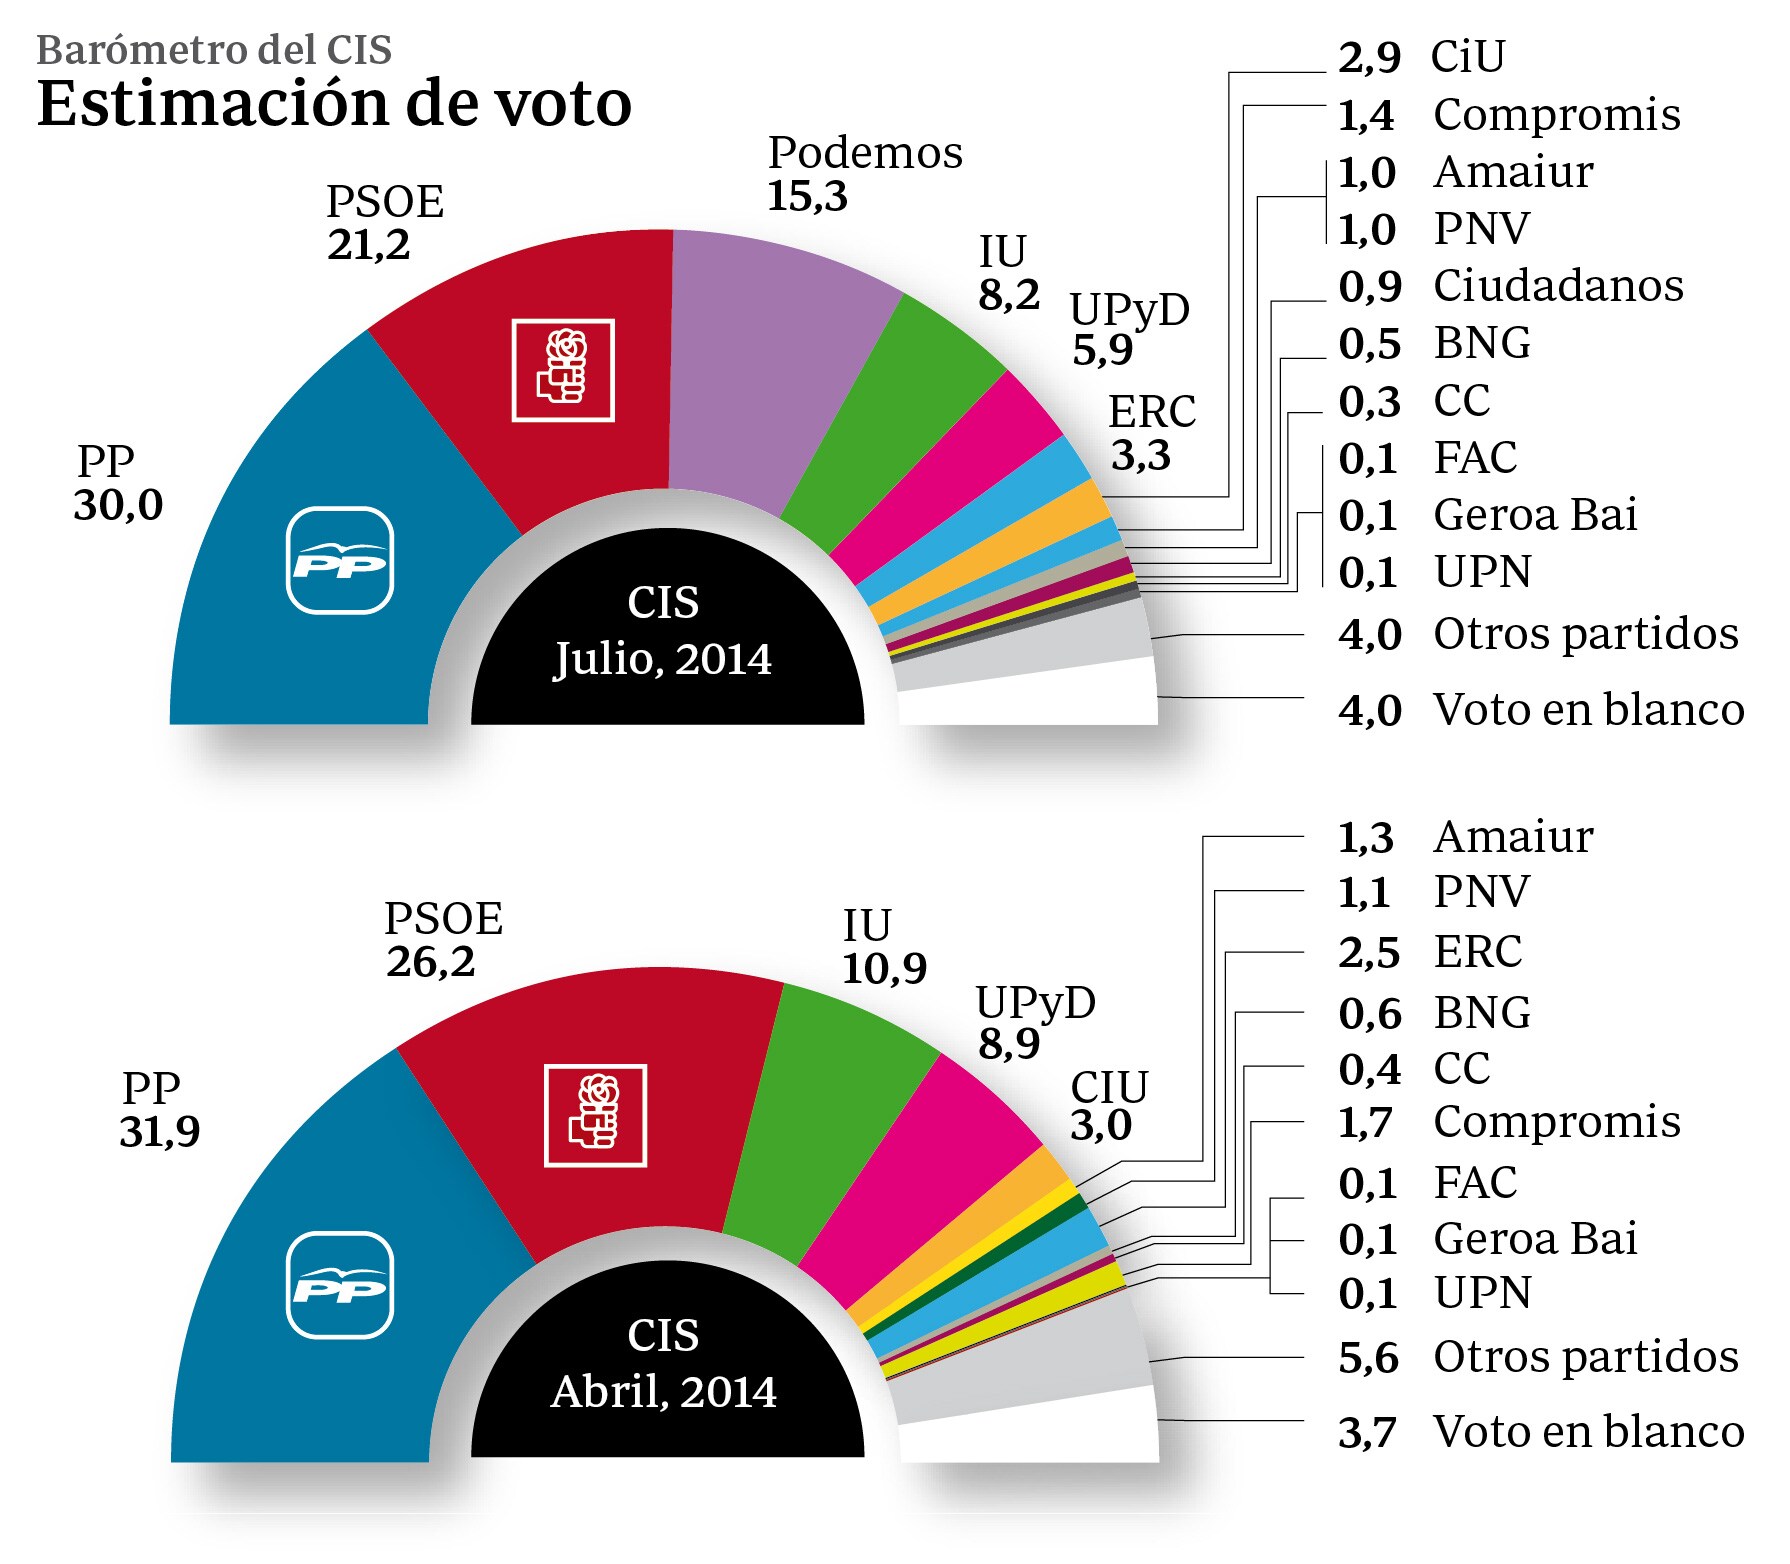 El PP aumenta su ventaja sobre el PSOE a 8,8 puntos, según la encuesta electoral del CIS